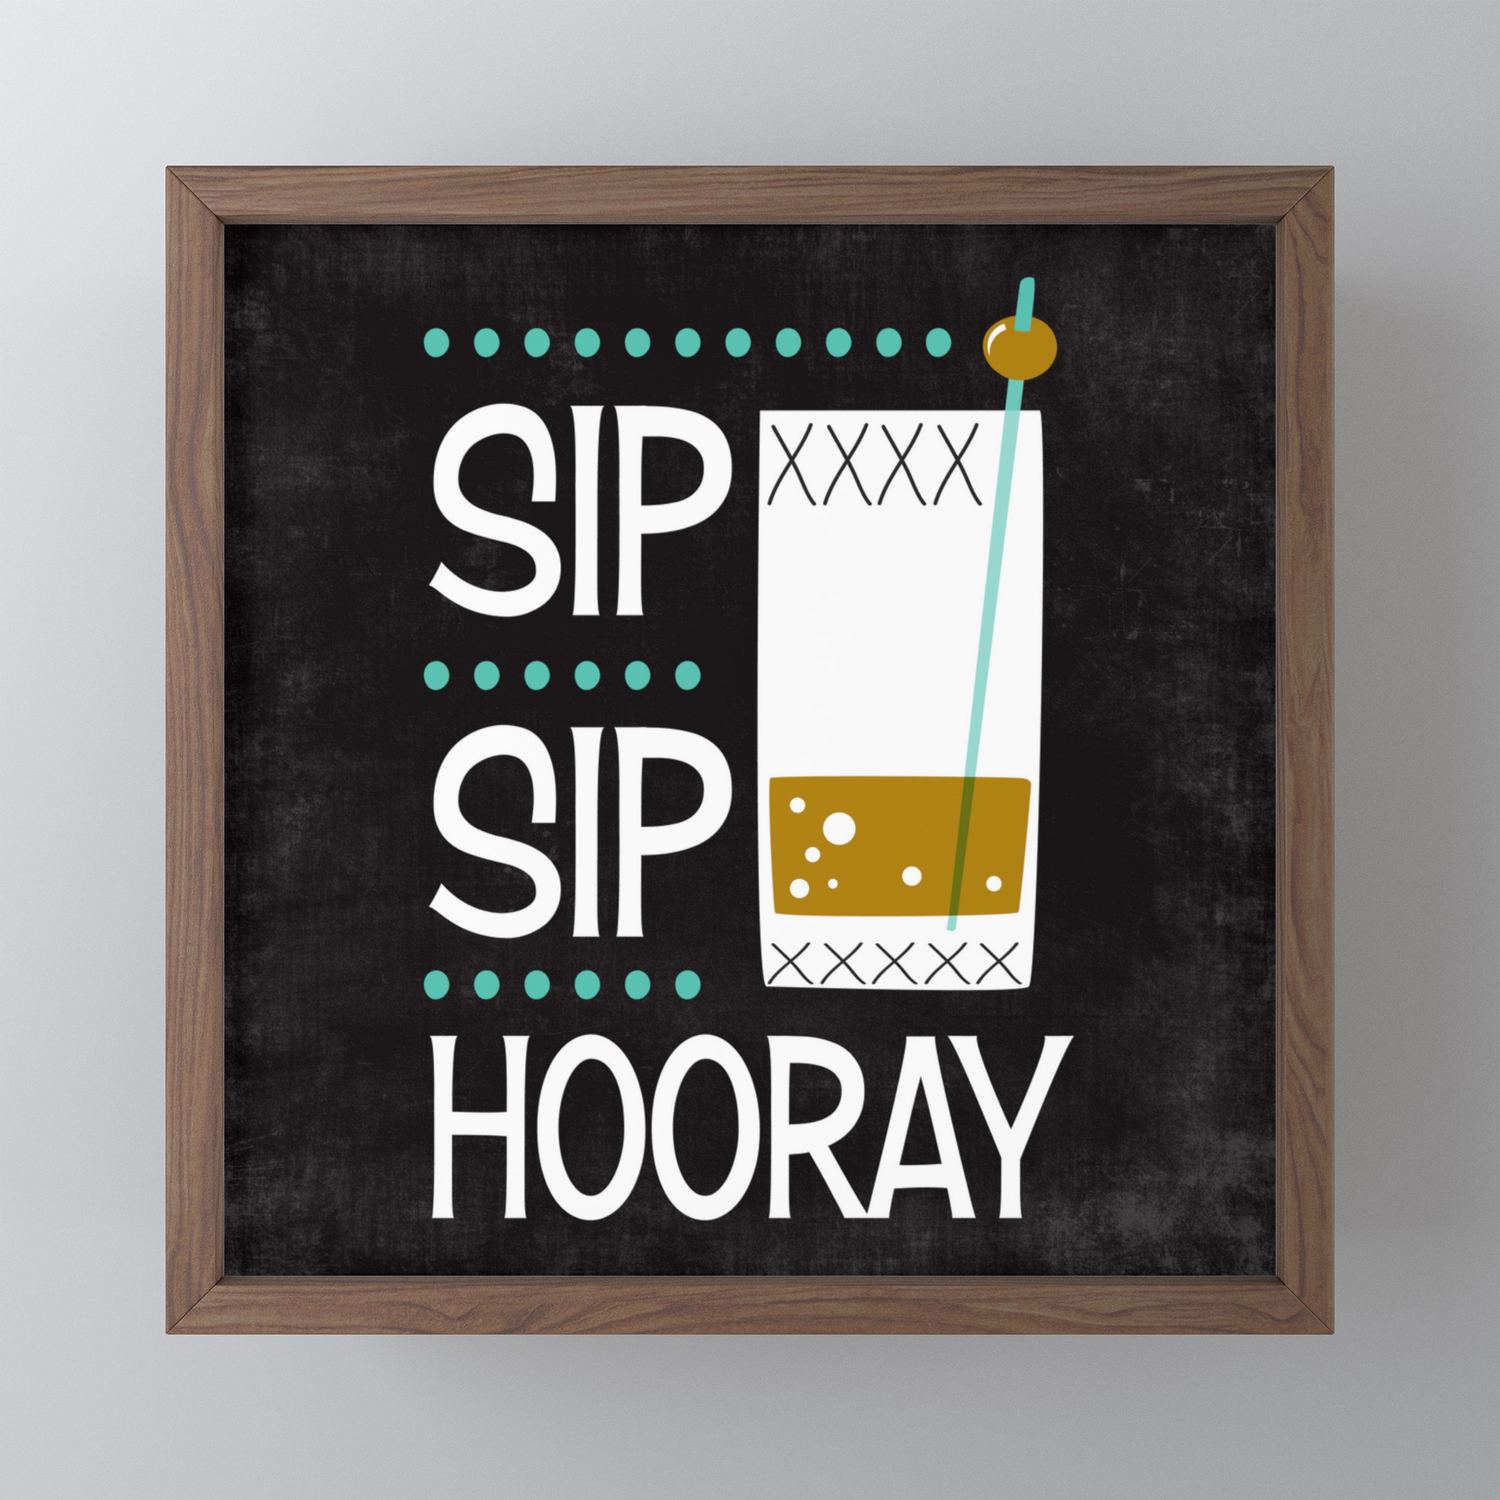 Sip sip hooray picture frame